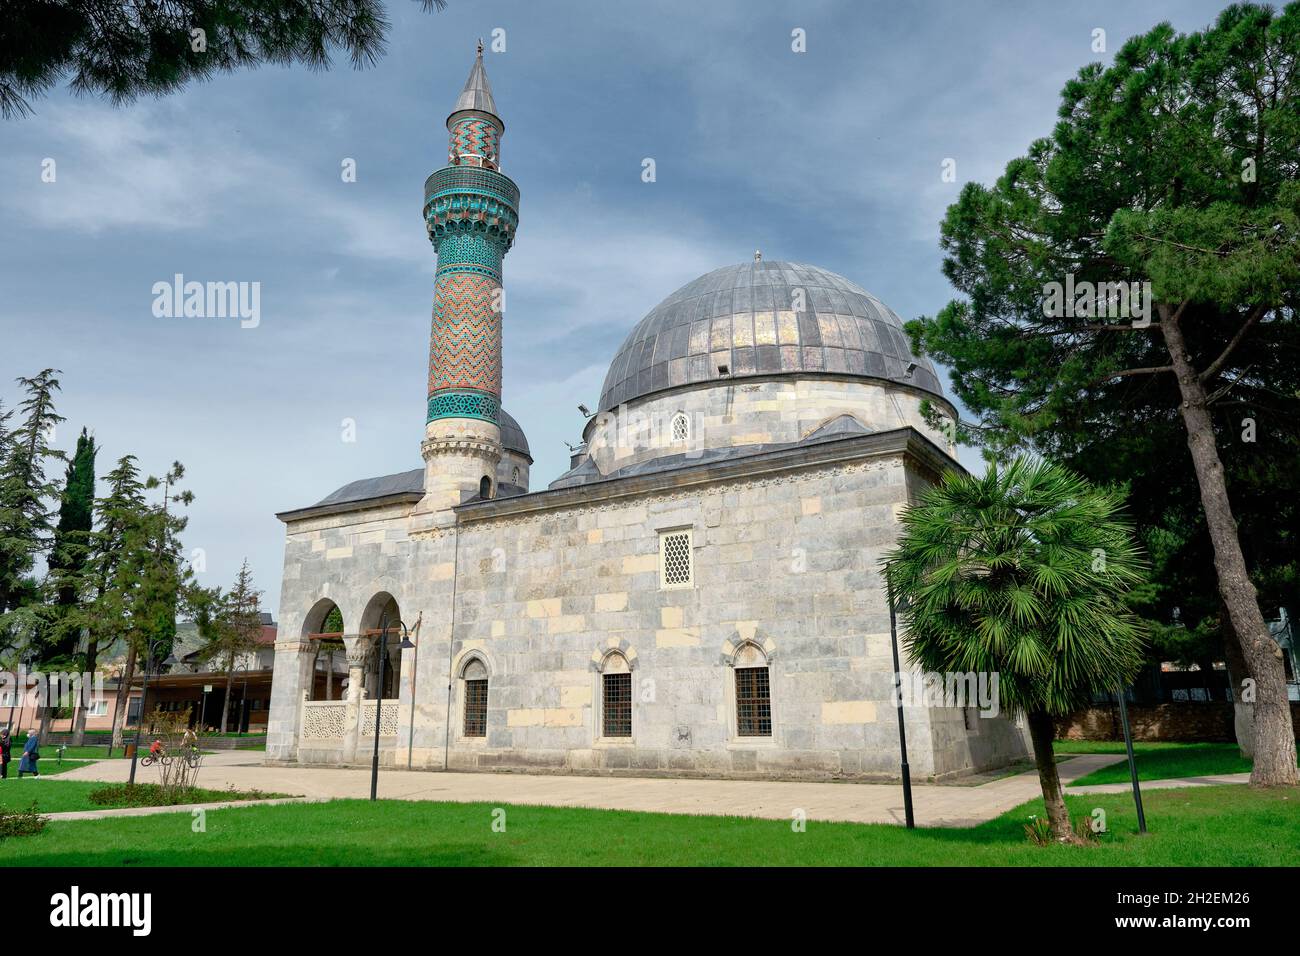 Grüne Moschee (Yesil Cami) Minarett in iznik, die von vielen iznik Fliesen bedeckt ist, iznik Keramik türkisfarbene Farbe erweitern Himmel Gravur auf Marmorsteinen. Stockfoto